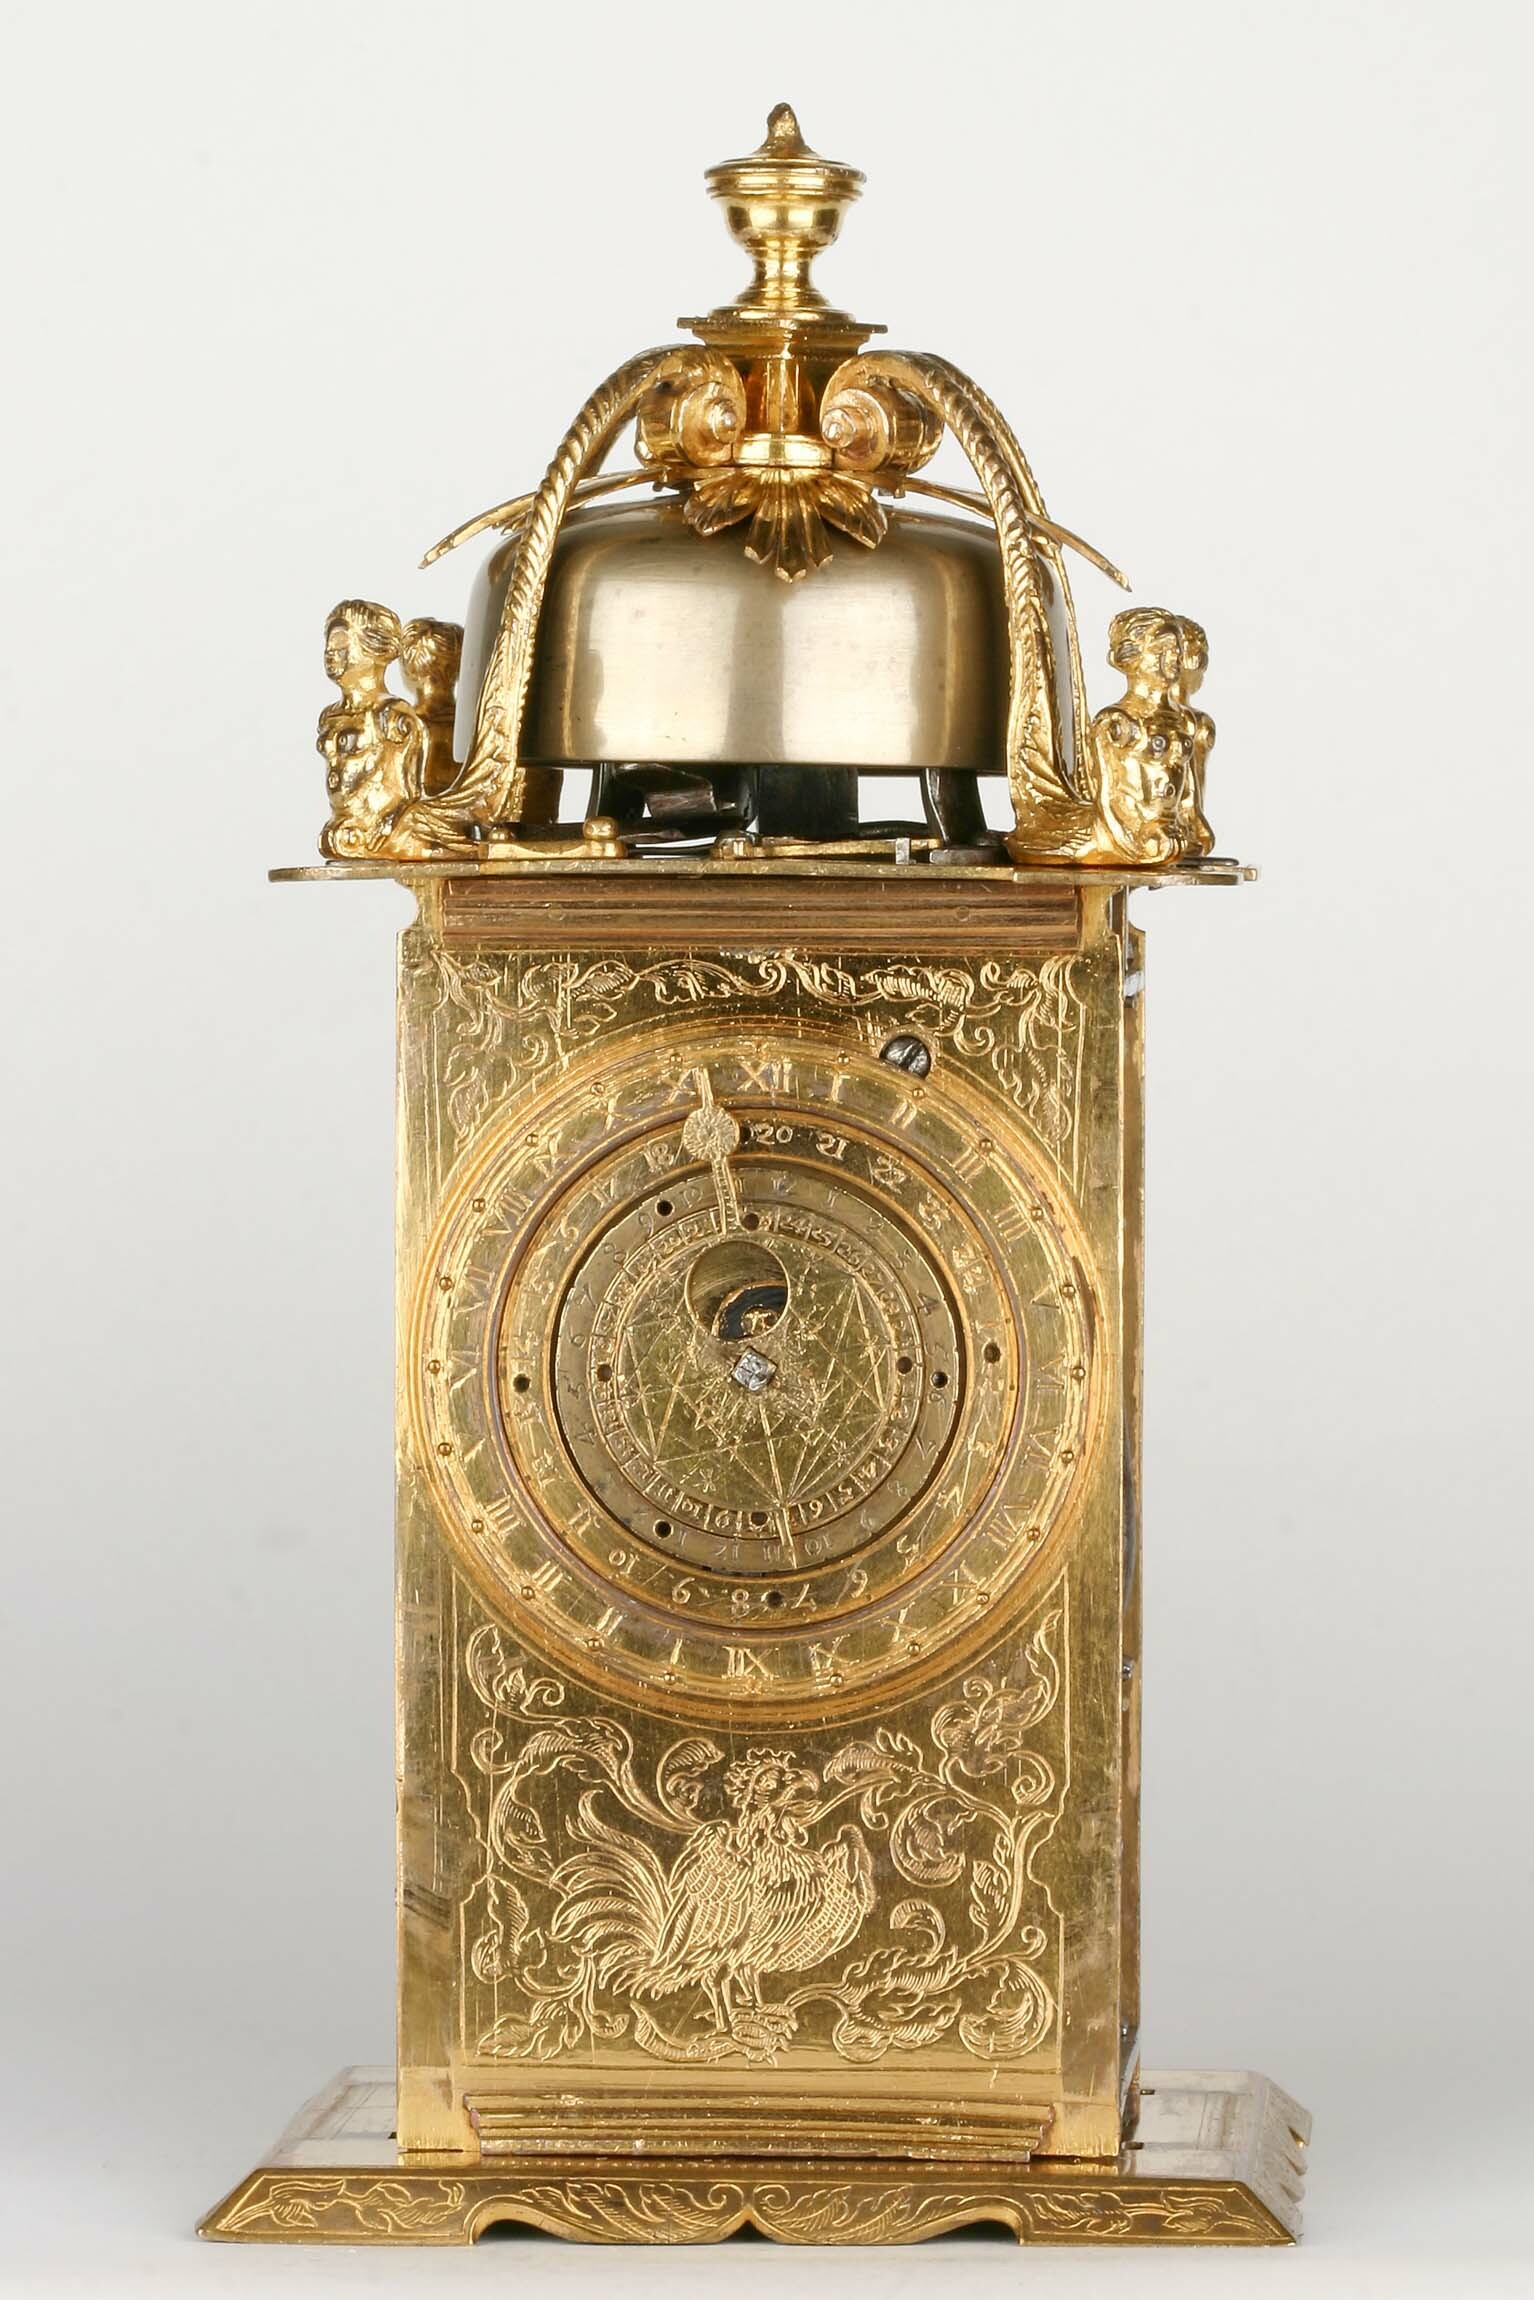 Türmchenuhr, Straßburg, 1573 (Deutsches Uhrenmuseum CC BY-SA)